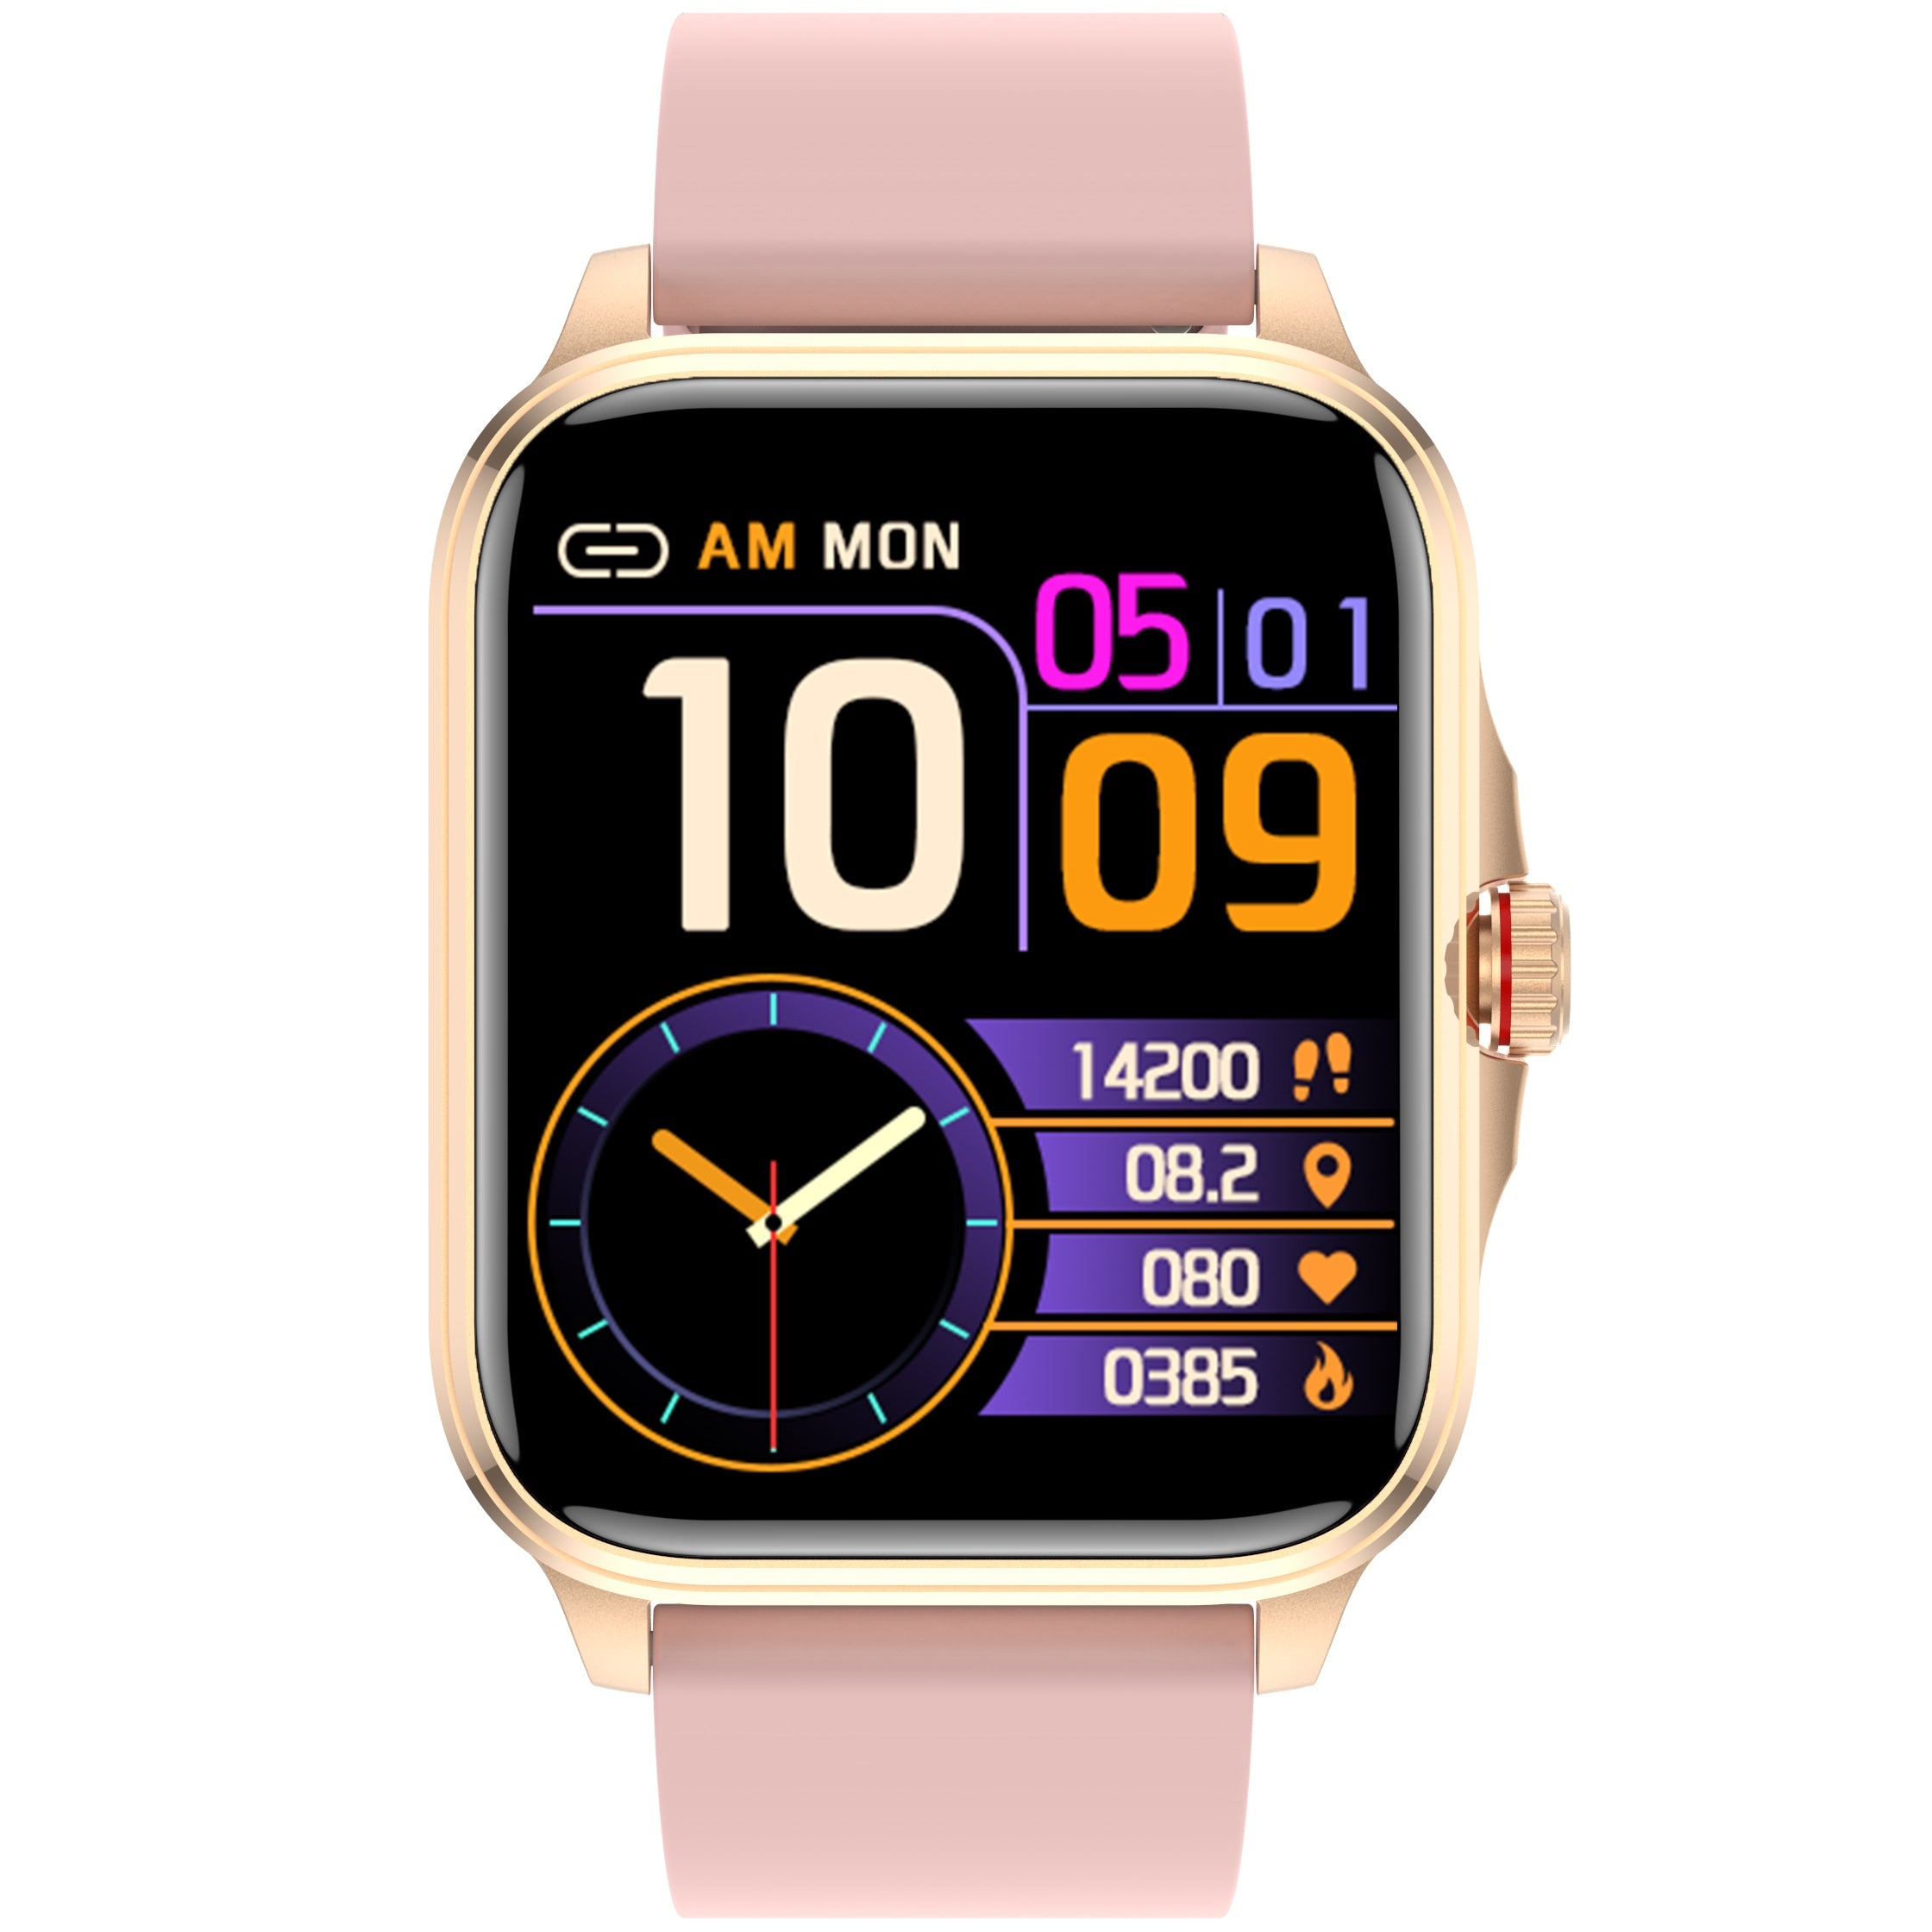 FAIR Fitbit Versa (1st Gen) Smart Watch - Rose Gold Aluminum/Pink Band  (FB505) | eBay